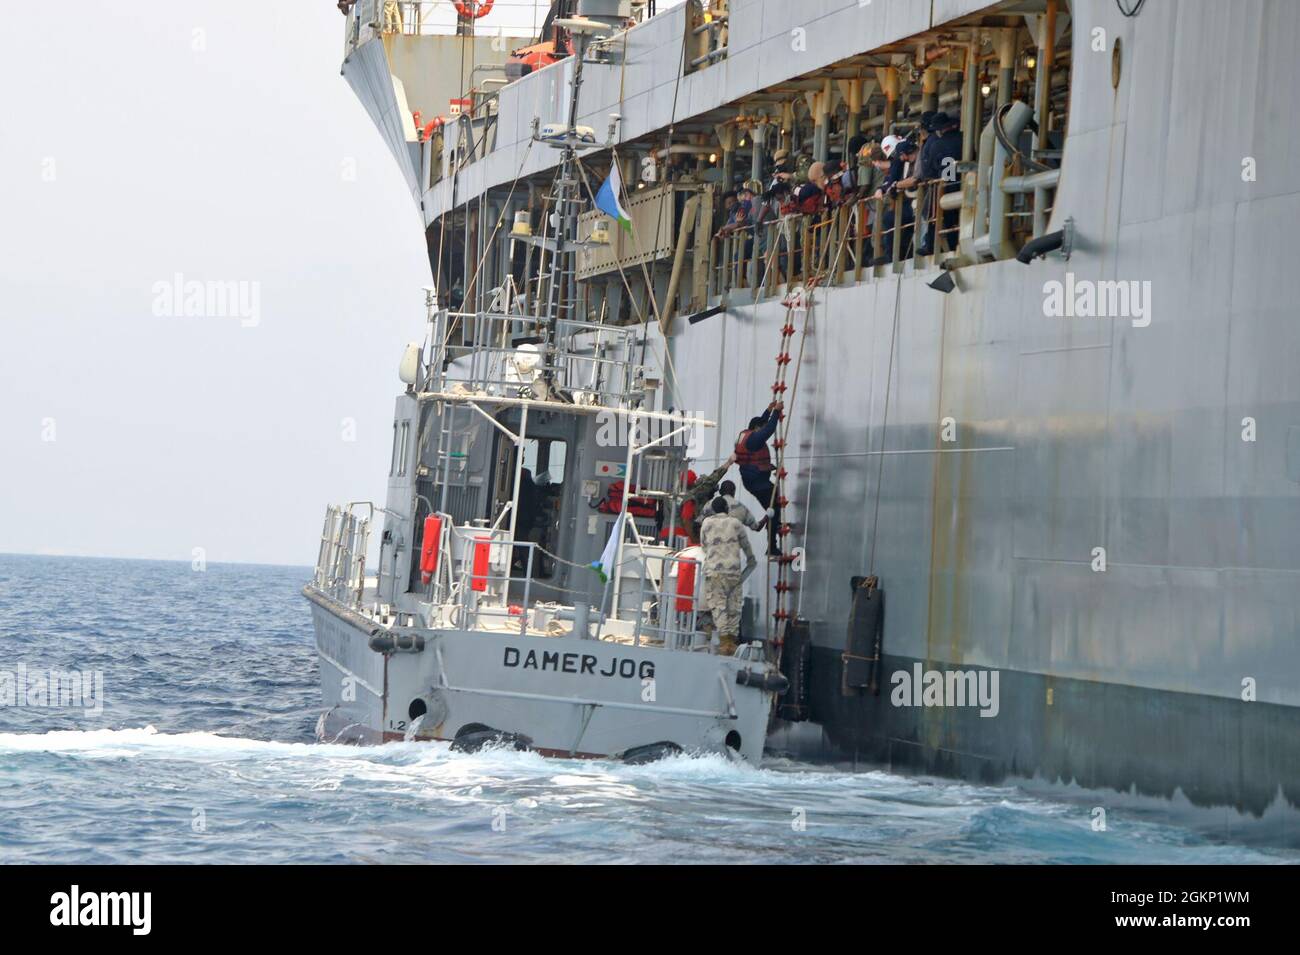 GOLFE DE TAJOURRA (10 juin 2021) 15 marins du navire submergé Falcon Line grimpent sur une échelle du Patuxent USNS au patrouilleur de la Garde côtière djiboutienne, DamerJog le 10 juin 2021. Patuxent opérait dans le golfe d'Aden le 9 juin, lorsque Falcon Line, un navire de fret général immatriculé au Gabon, s'enfonce. Patuxent est arrivé à temps pour secourir l'équipage. Jeudi, la Garde côtière djiboutienne a transféré l'équipage à la terre. Le Eleven (MSRON-11) de l'escadron de sécurité expéditionnaire maritime de la marine américaine, basé au Camp Lemonnier, a soutenu le transfert en assurant la sécurité autour de Patuxent et du Djibo Banque D'Images